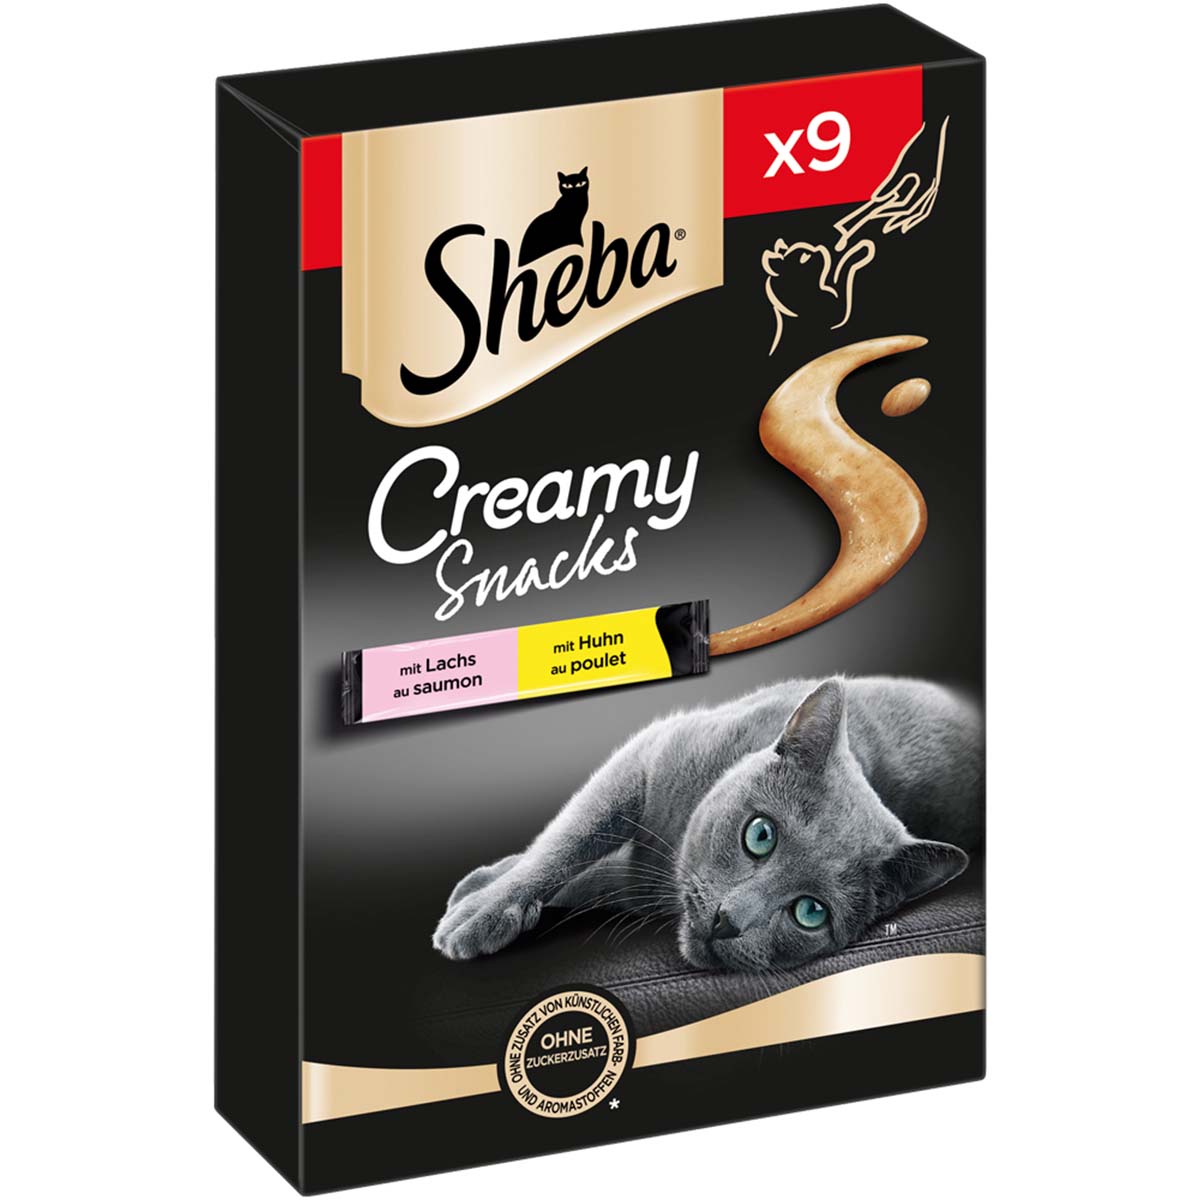 SHEBA® Creamy Snacks mit Huhn und Lachs 9x12g von Sheba